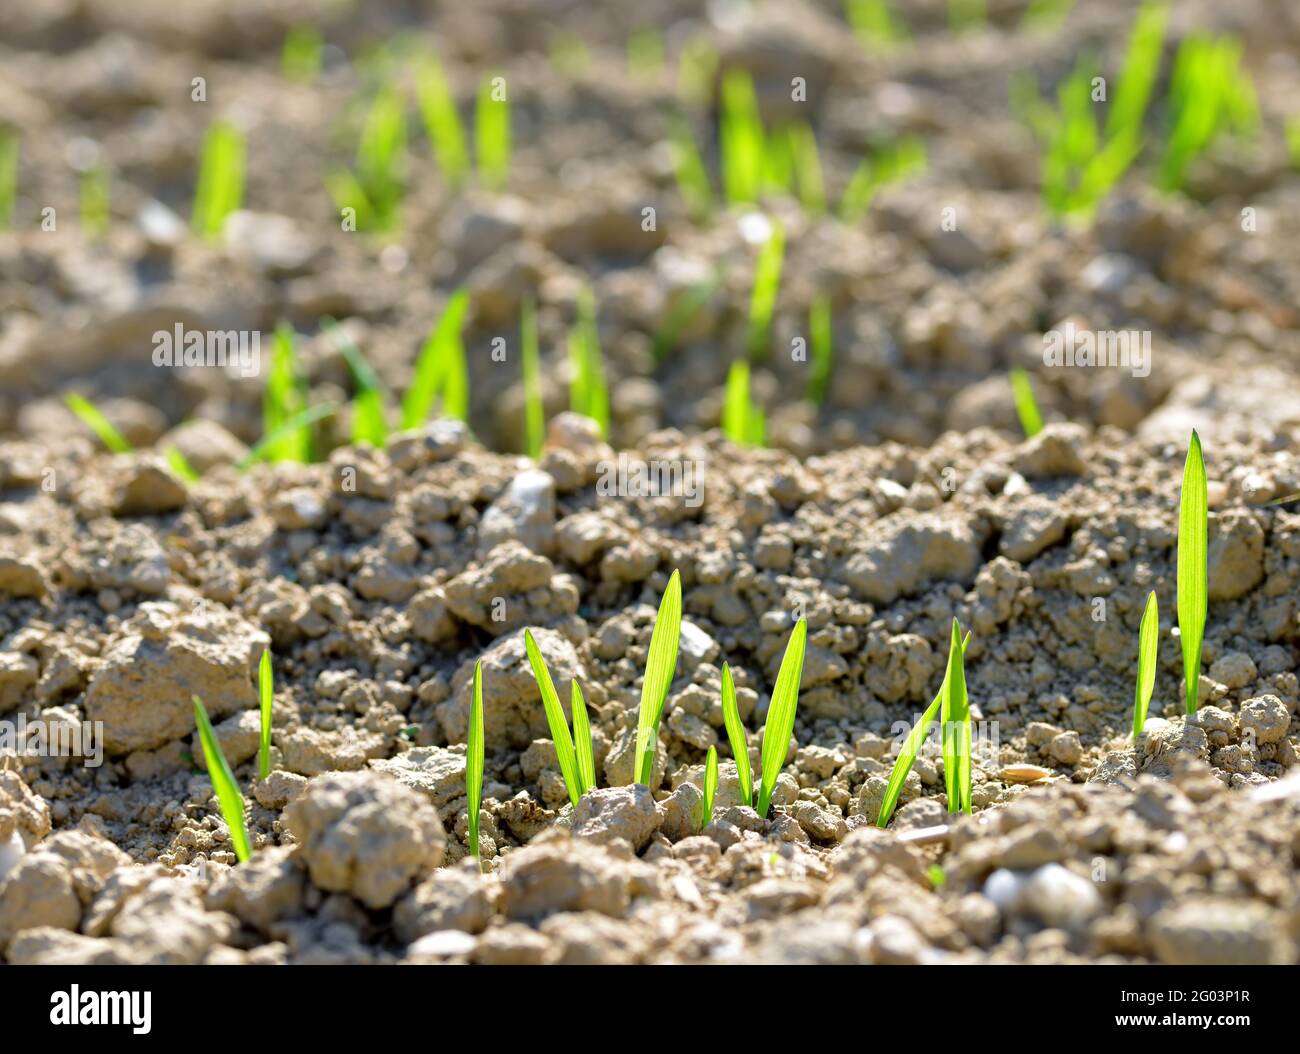 Plantones de trigo jóvenes que crecen en un suelo. Temporada de primavera. Fondo de la naturaleza. Foto de stock